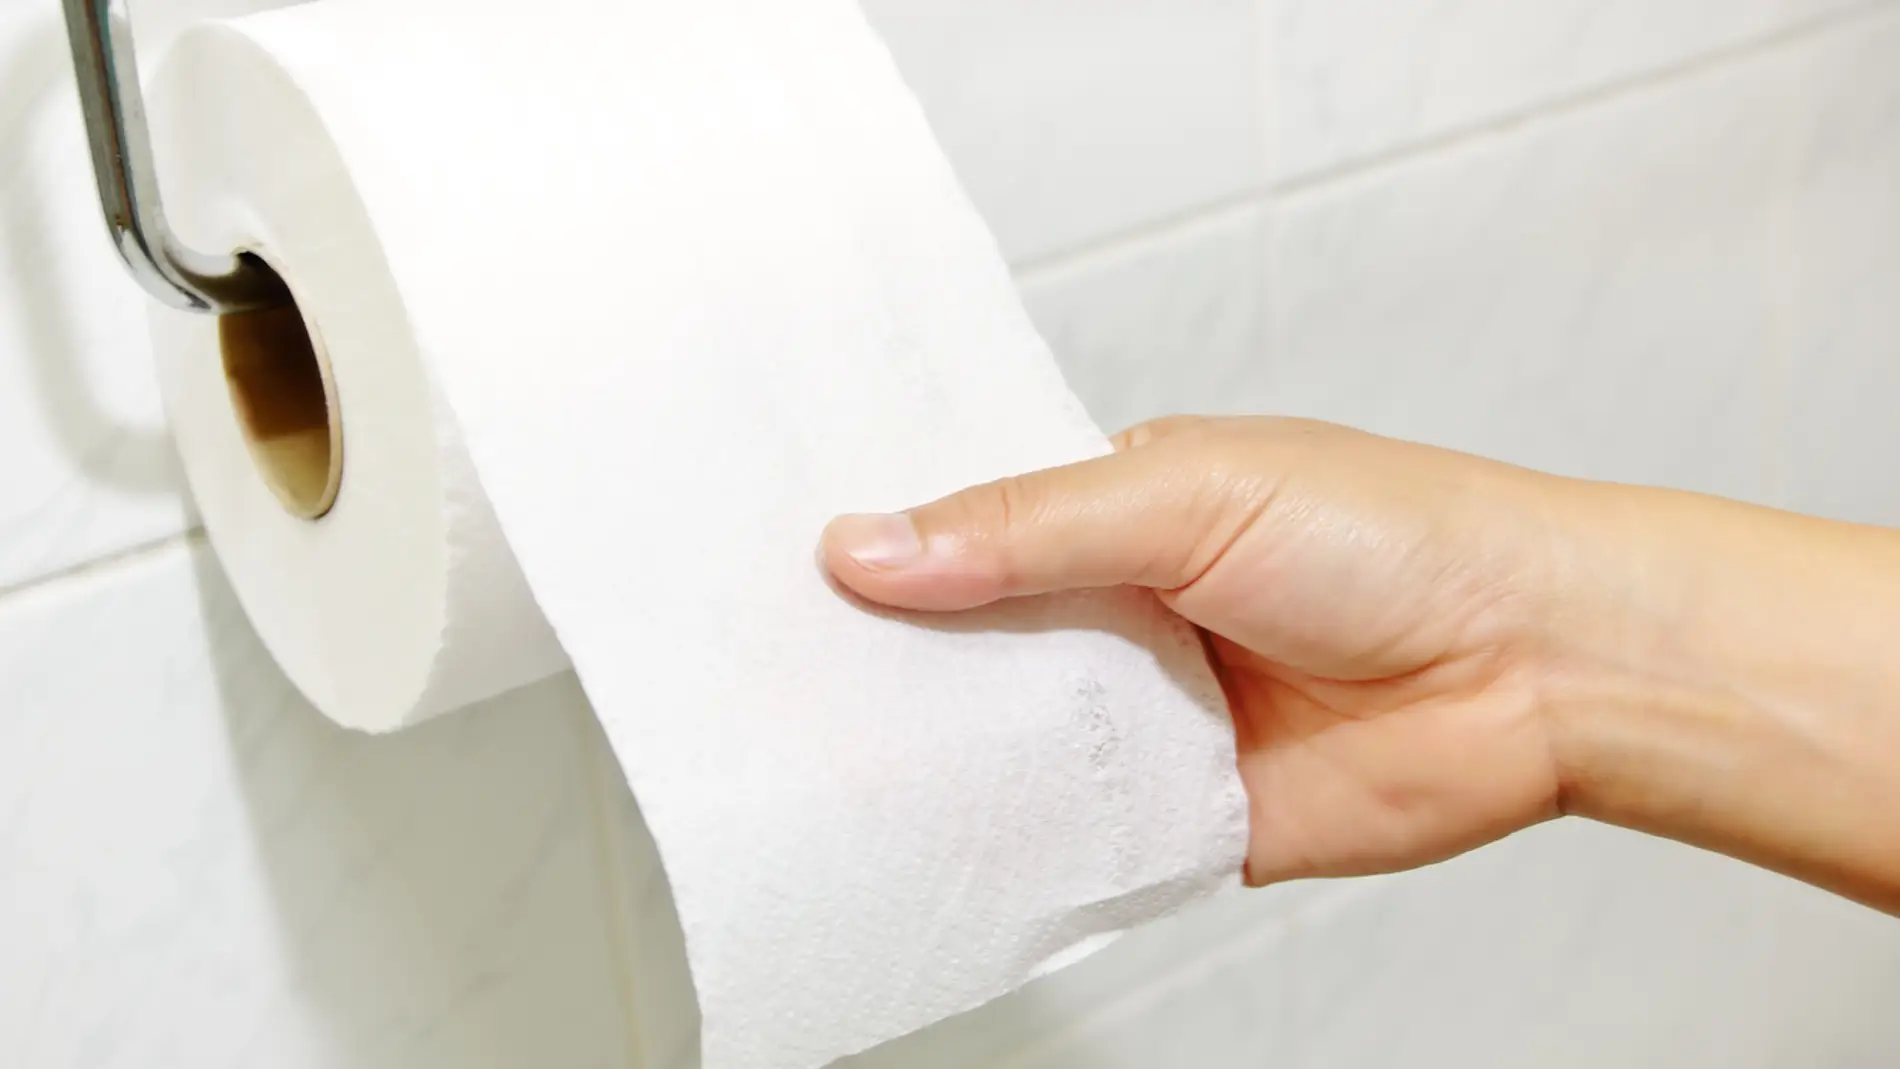 Cálculo Entrada No lo hagas Adiós al papel higiénico: no creerás esta alternativa que ya se está  comenzando a utilizar